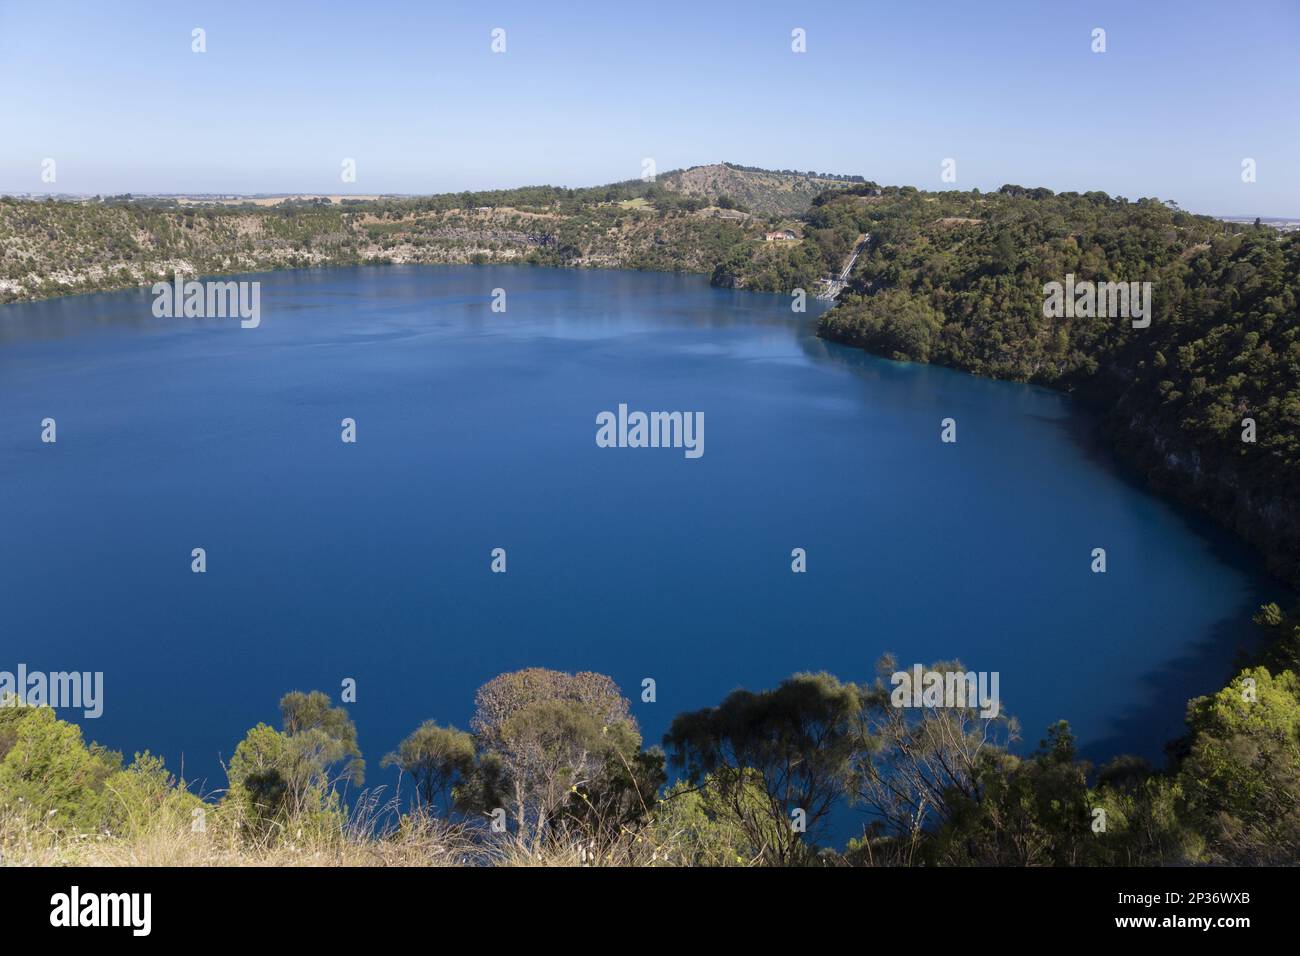 Vista del lago monomictico situato nel mario vulcanico estinto, Blue Lake, Mount Gambier, Australia Meridionale, Australia Foto Stock